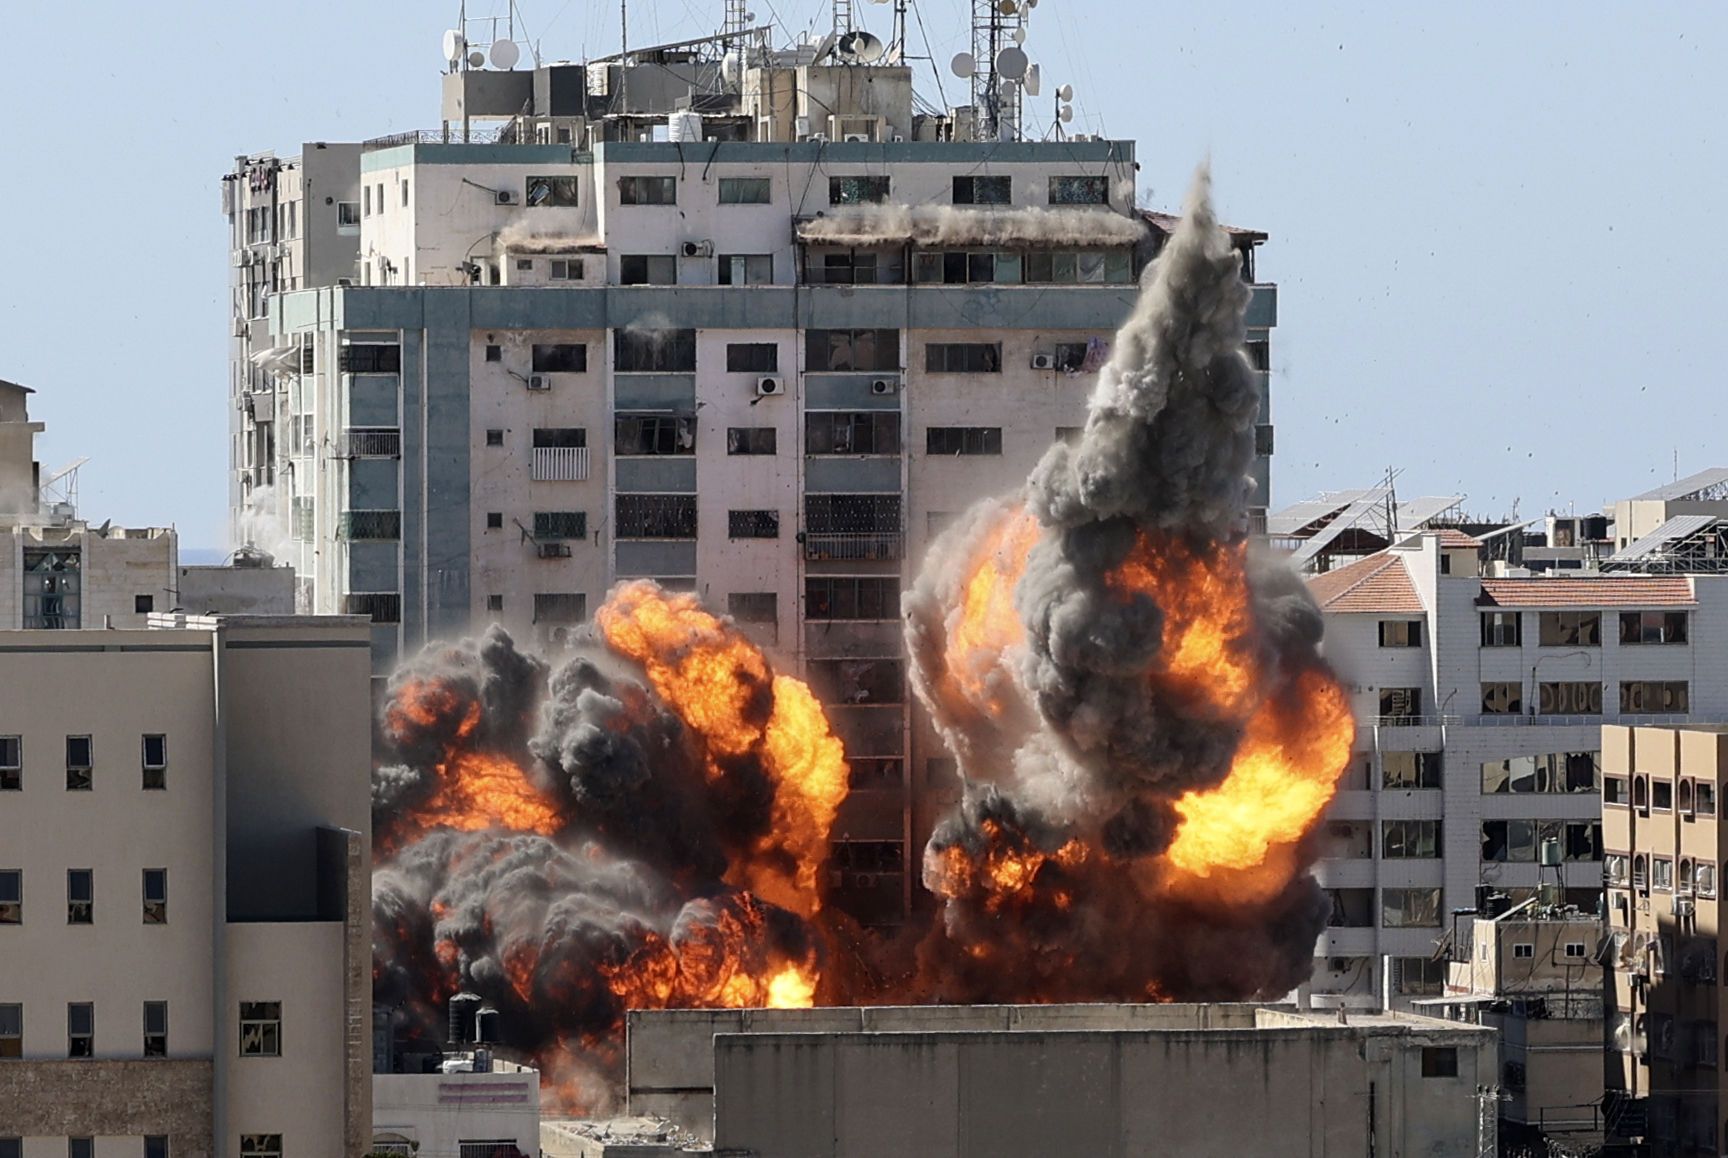 Интенсивность обстрелов очень высокая, такого раньше не было — Илия Куса об израильско-палестинском конфликте